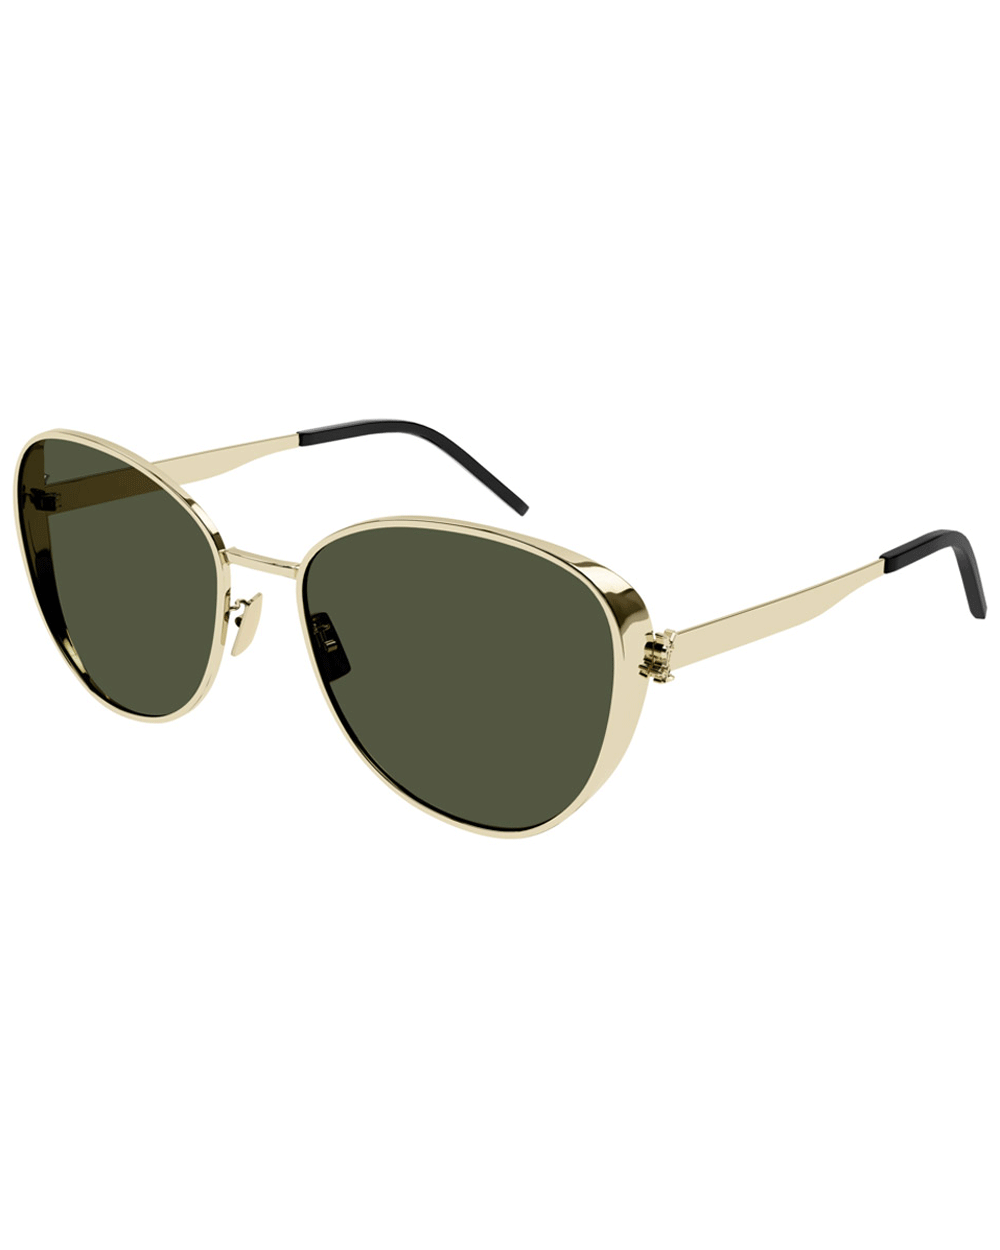 Monogram SL M91 Sunglasses